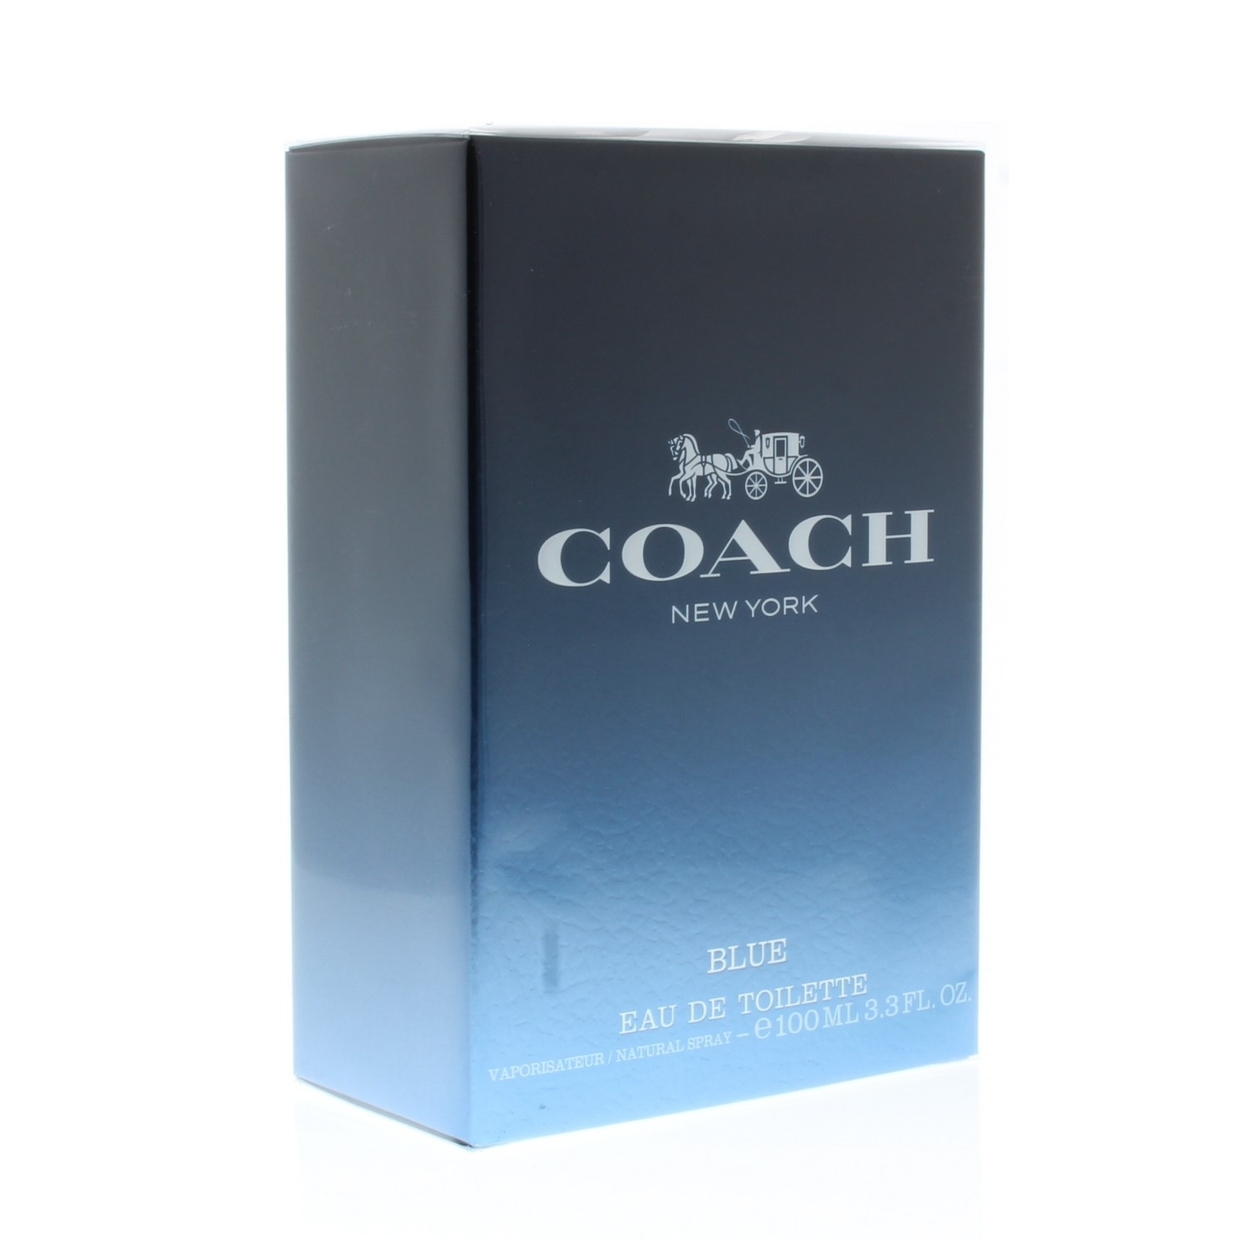 Coach Blue Eau de Toilette Spray for Men 3.3oz/100ml - image 2 of 3